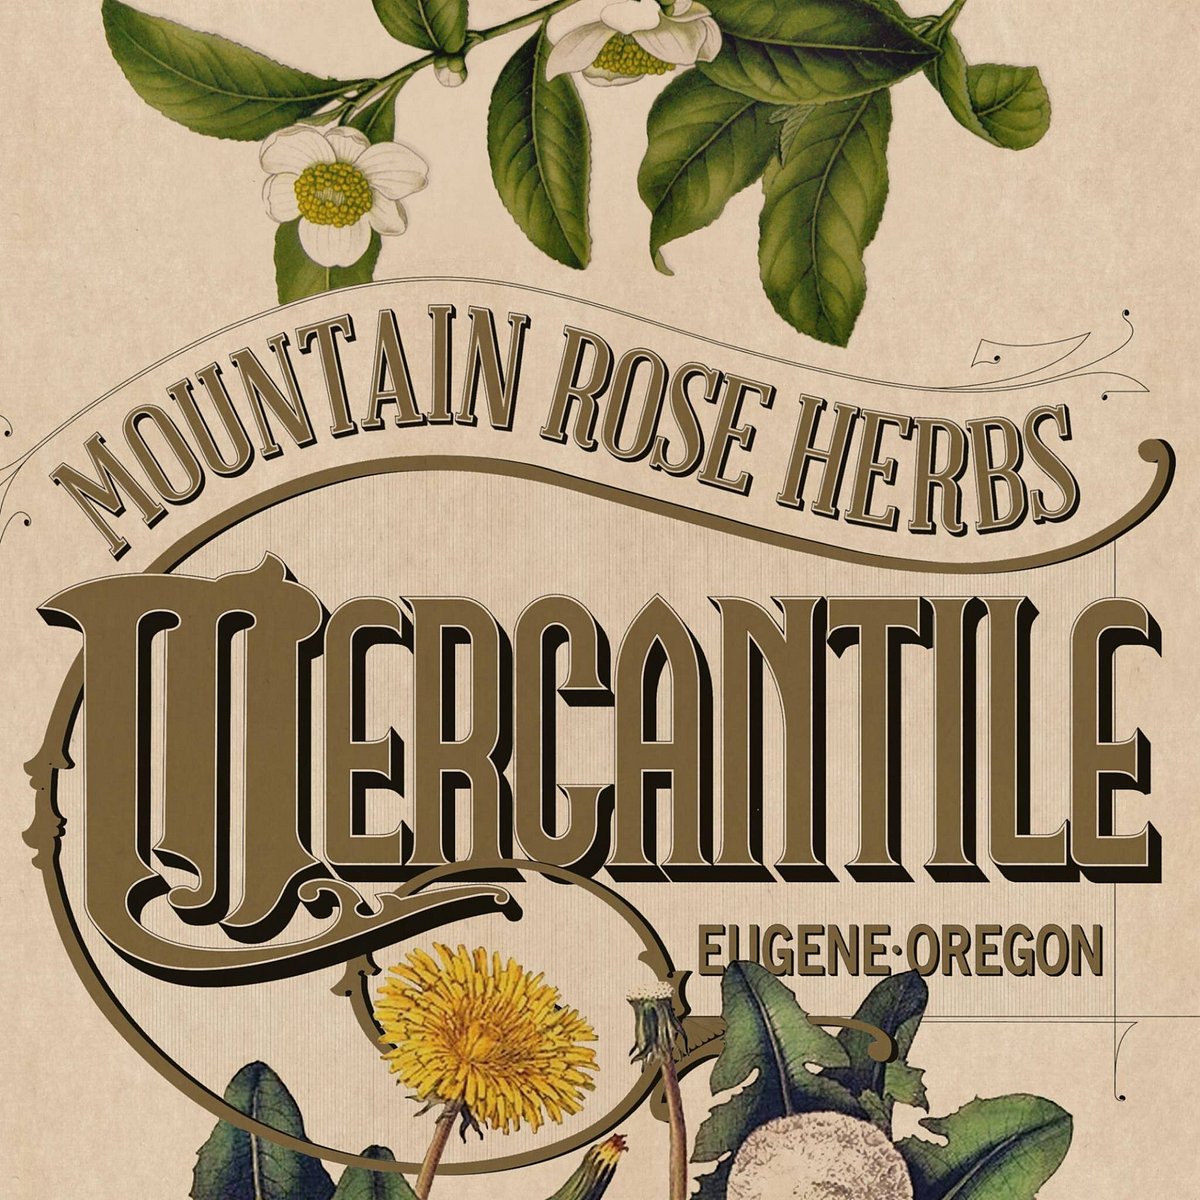 Mountain Rose Herbs Mercantile (Eugene, OR): Hours, Address